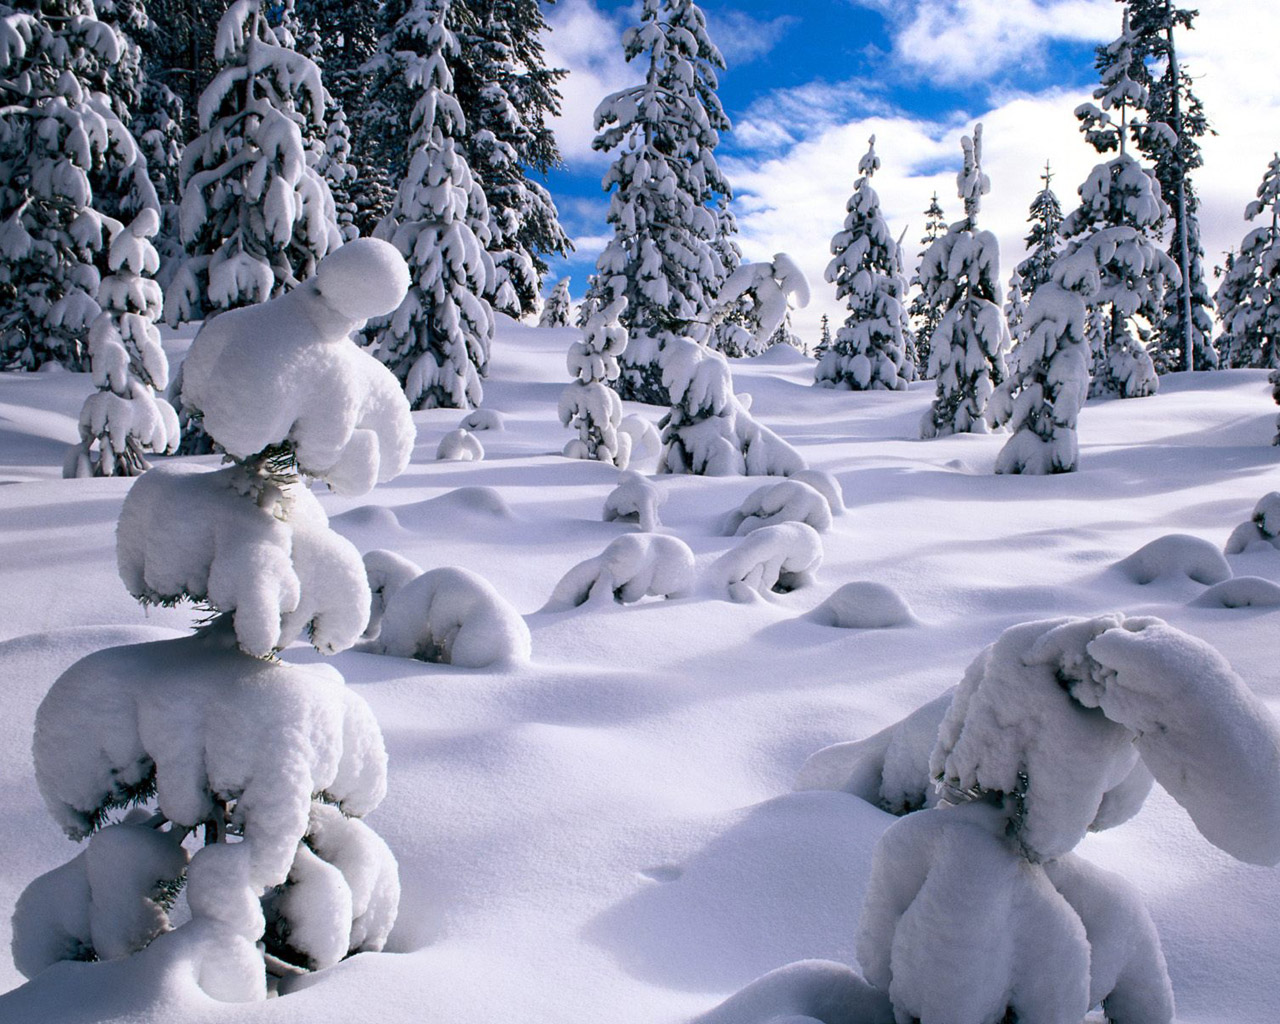 Escenas Hermosas del invierno - The Beauty of Winter - Hot Bollywood